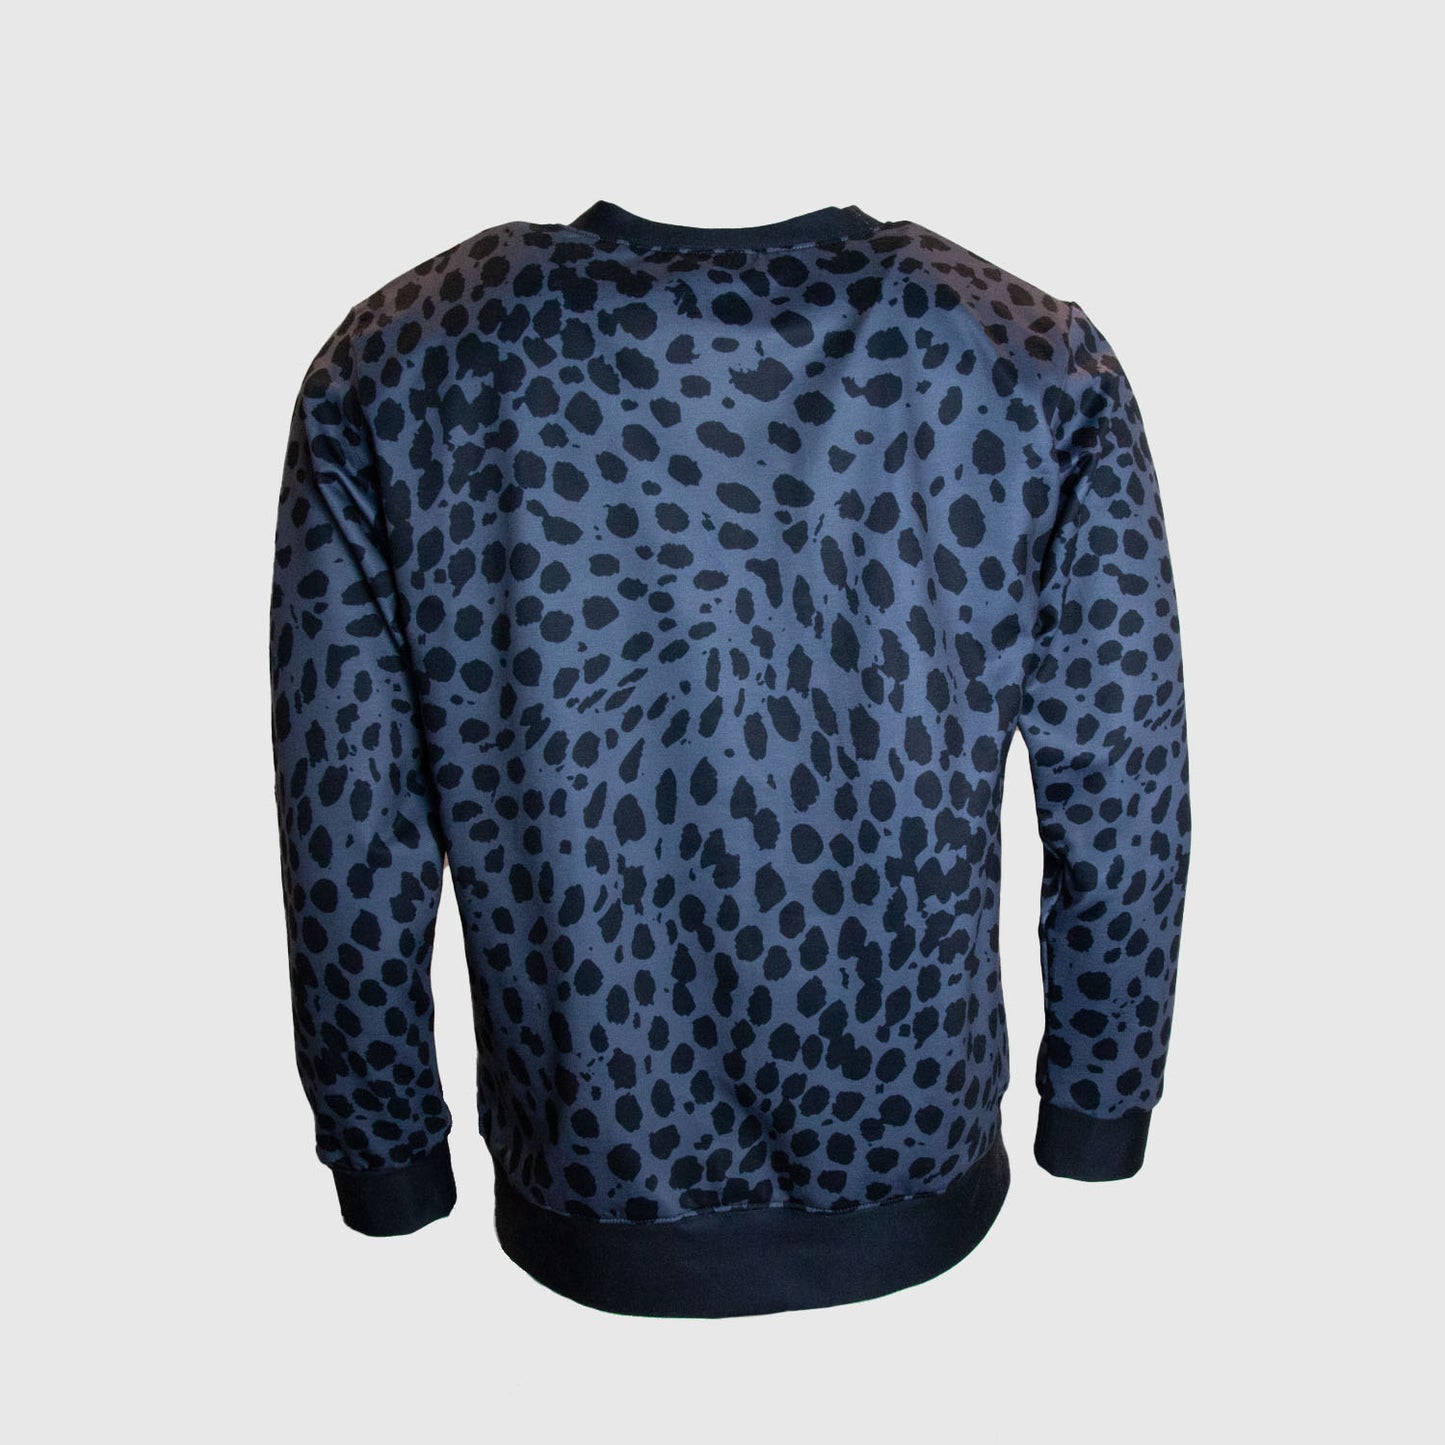 Cheetah Print Charcoal Fleece Sweatshirt